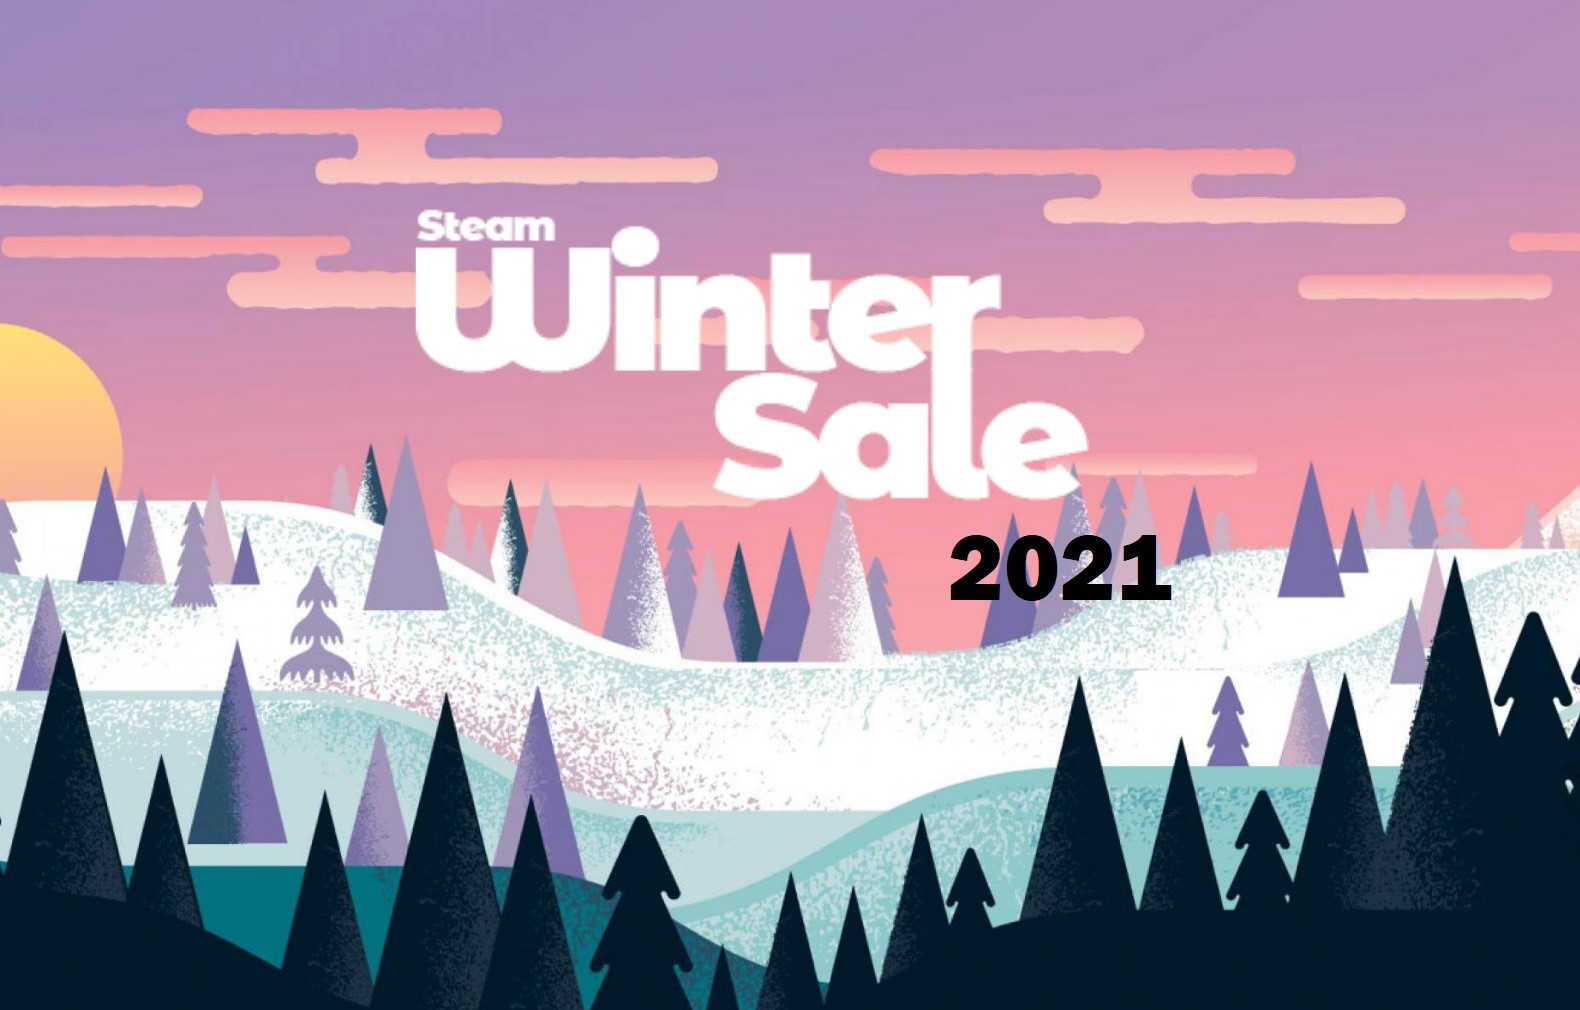 2021 Steam Winter Sale